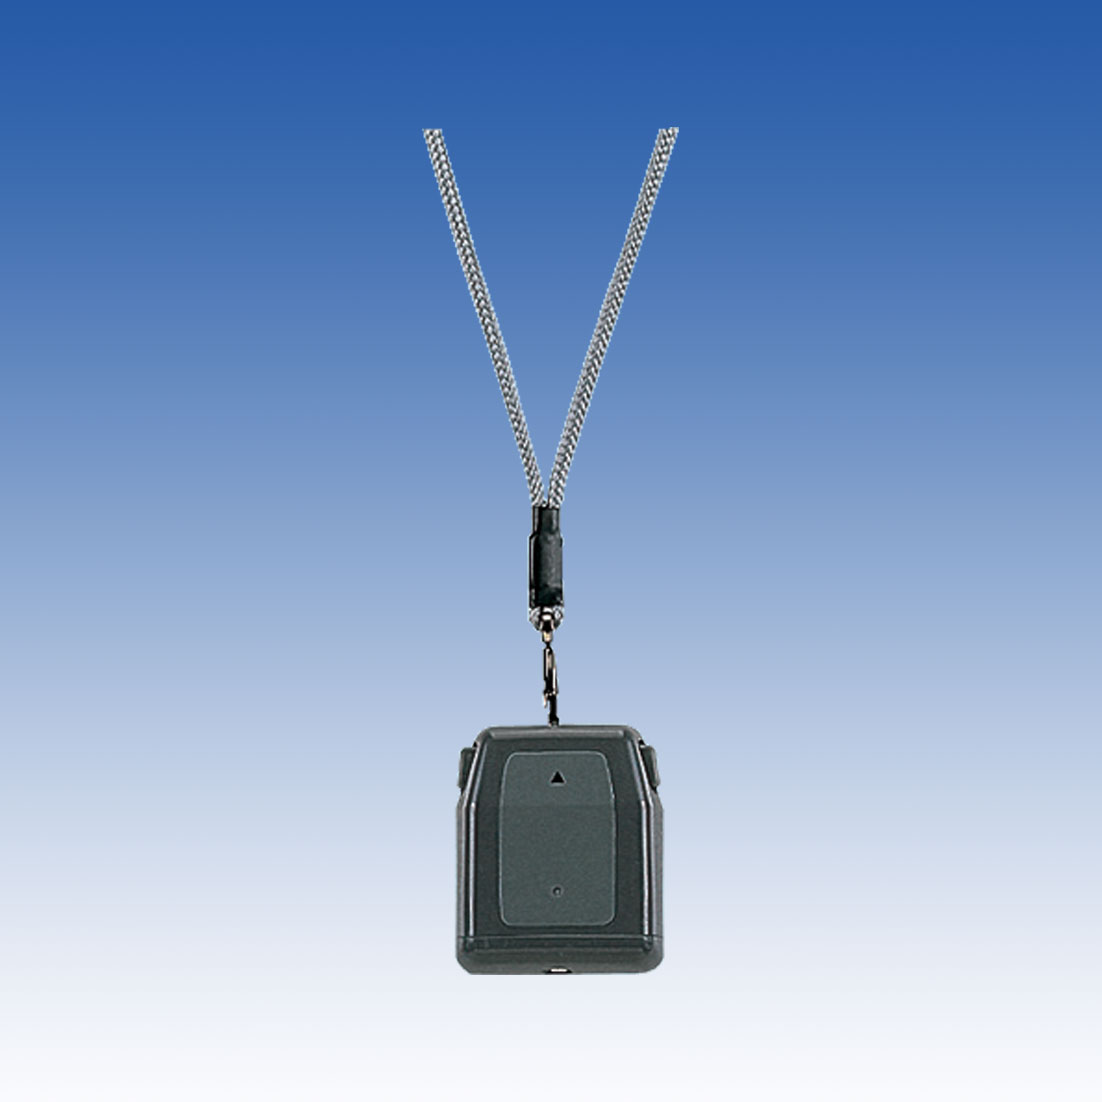 ペンダント腕時計型送信機 TX-104B 竹中エンジニアリング 防犯センサー